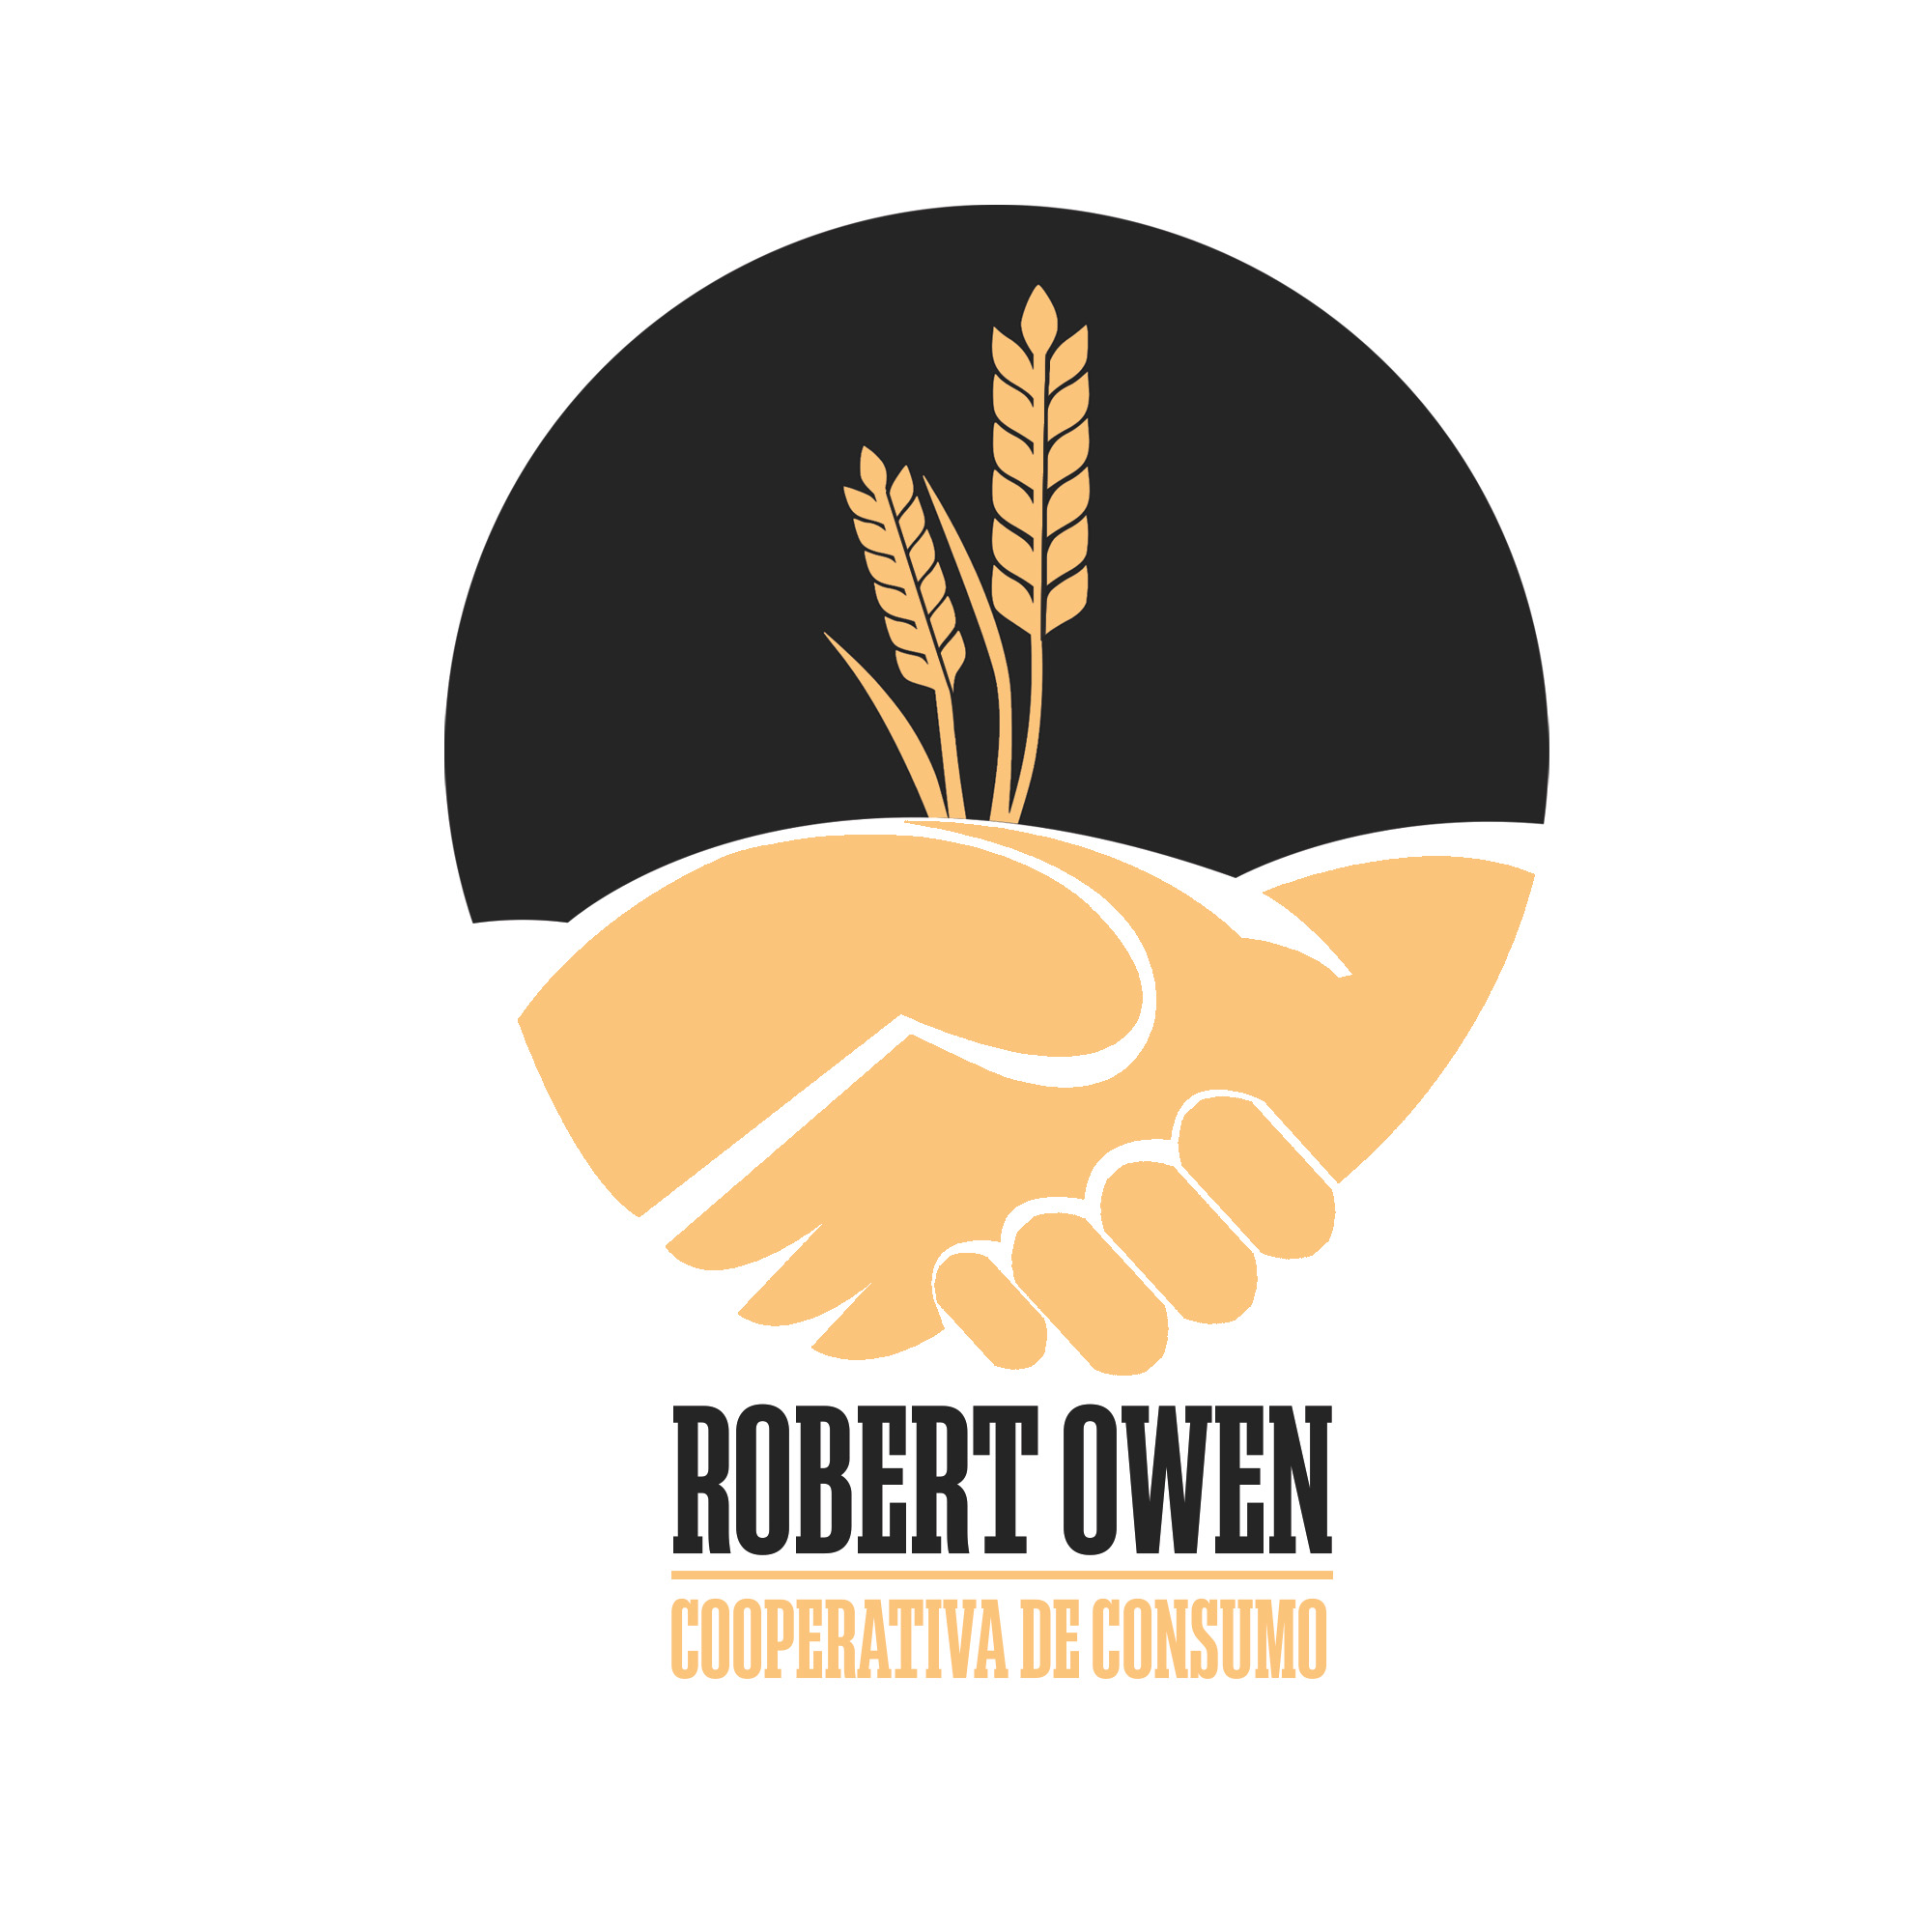 Logotipo Robert Owern, se ve un formando un círculo negro, dos manos amarillas en modo saludo 